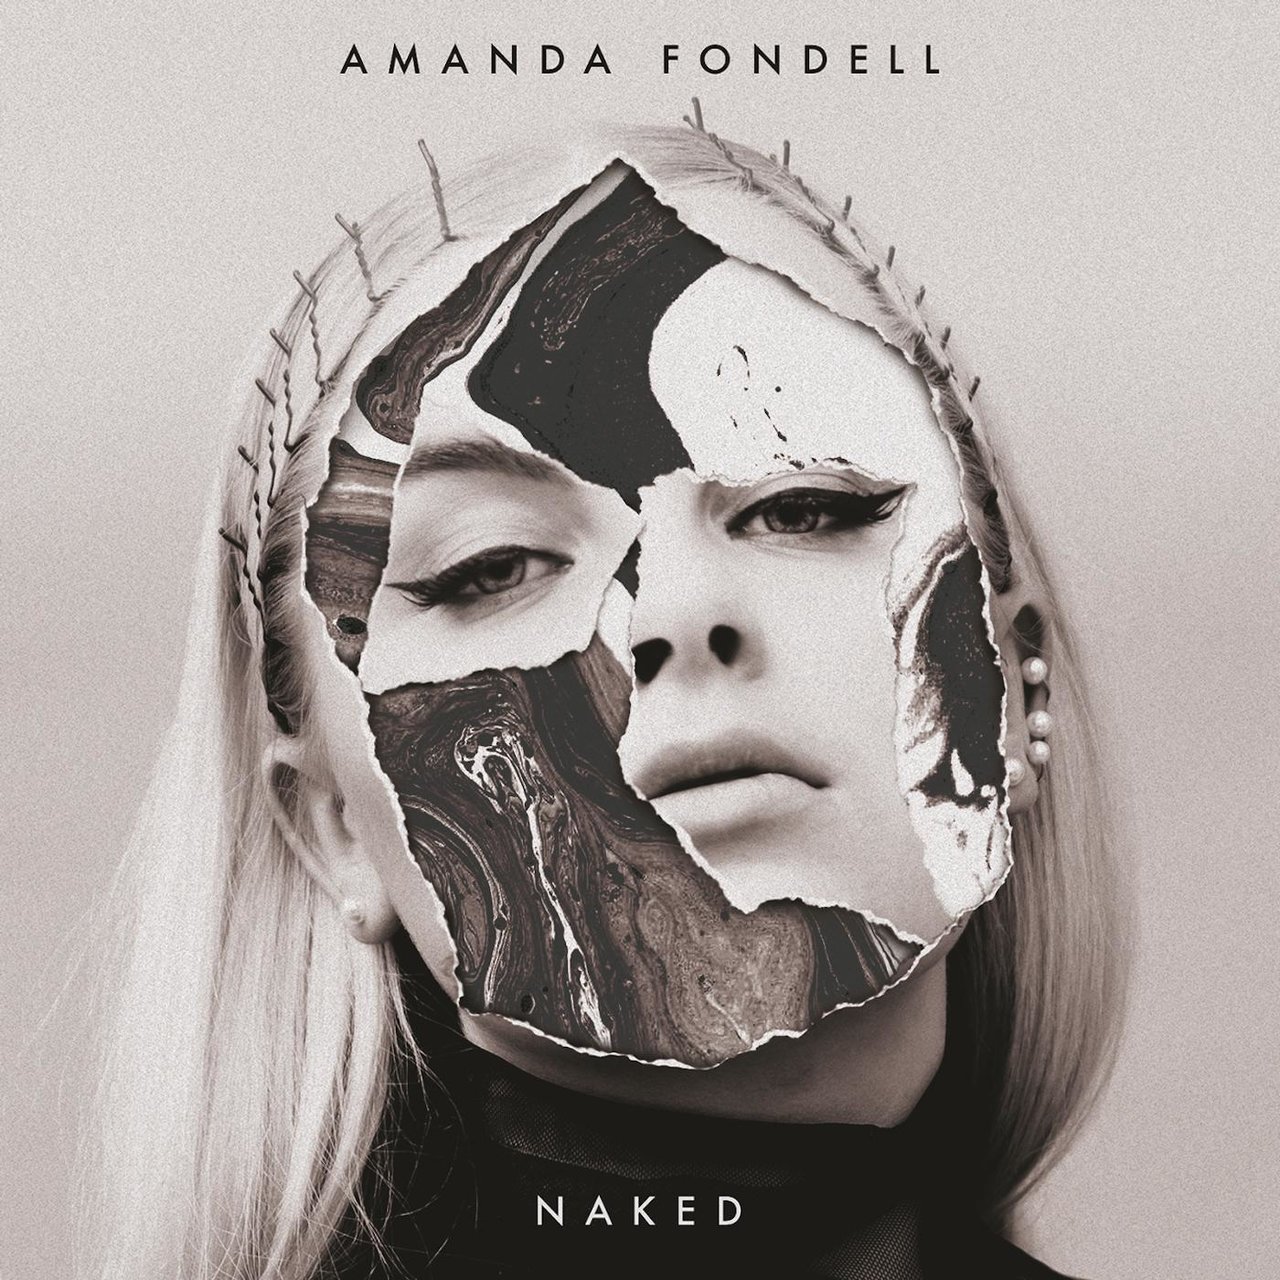 Amanda Fondell Naked cover artwork